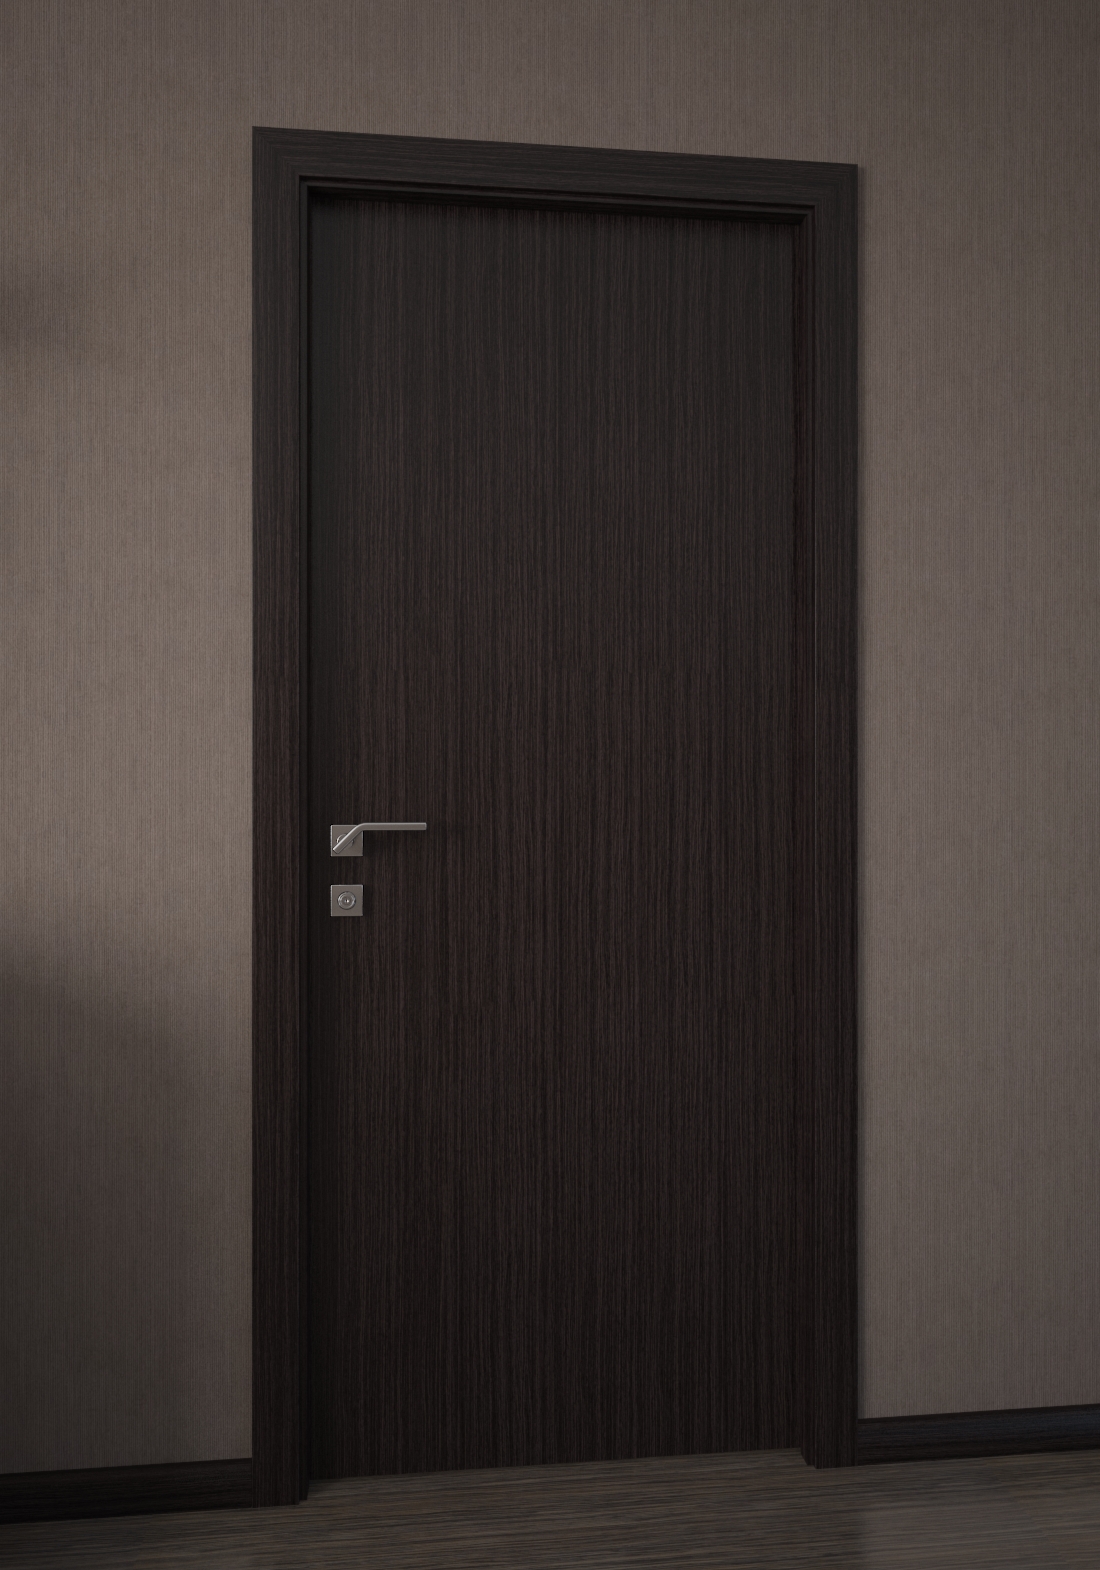 Дверь межкомнатная Ремстройпласт стиль венге венге, 2000x800, глухая